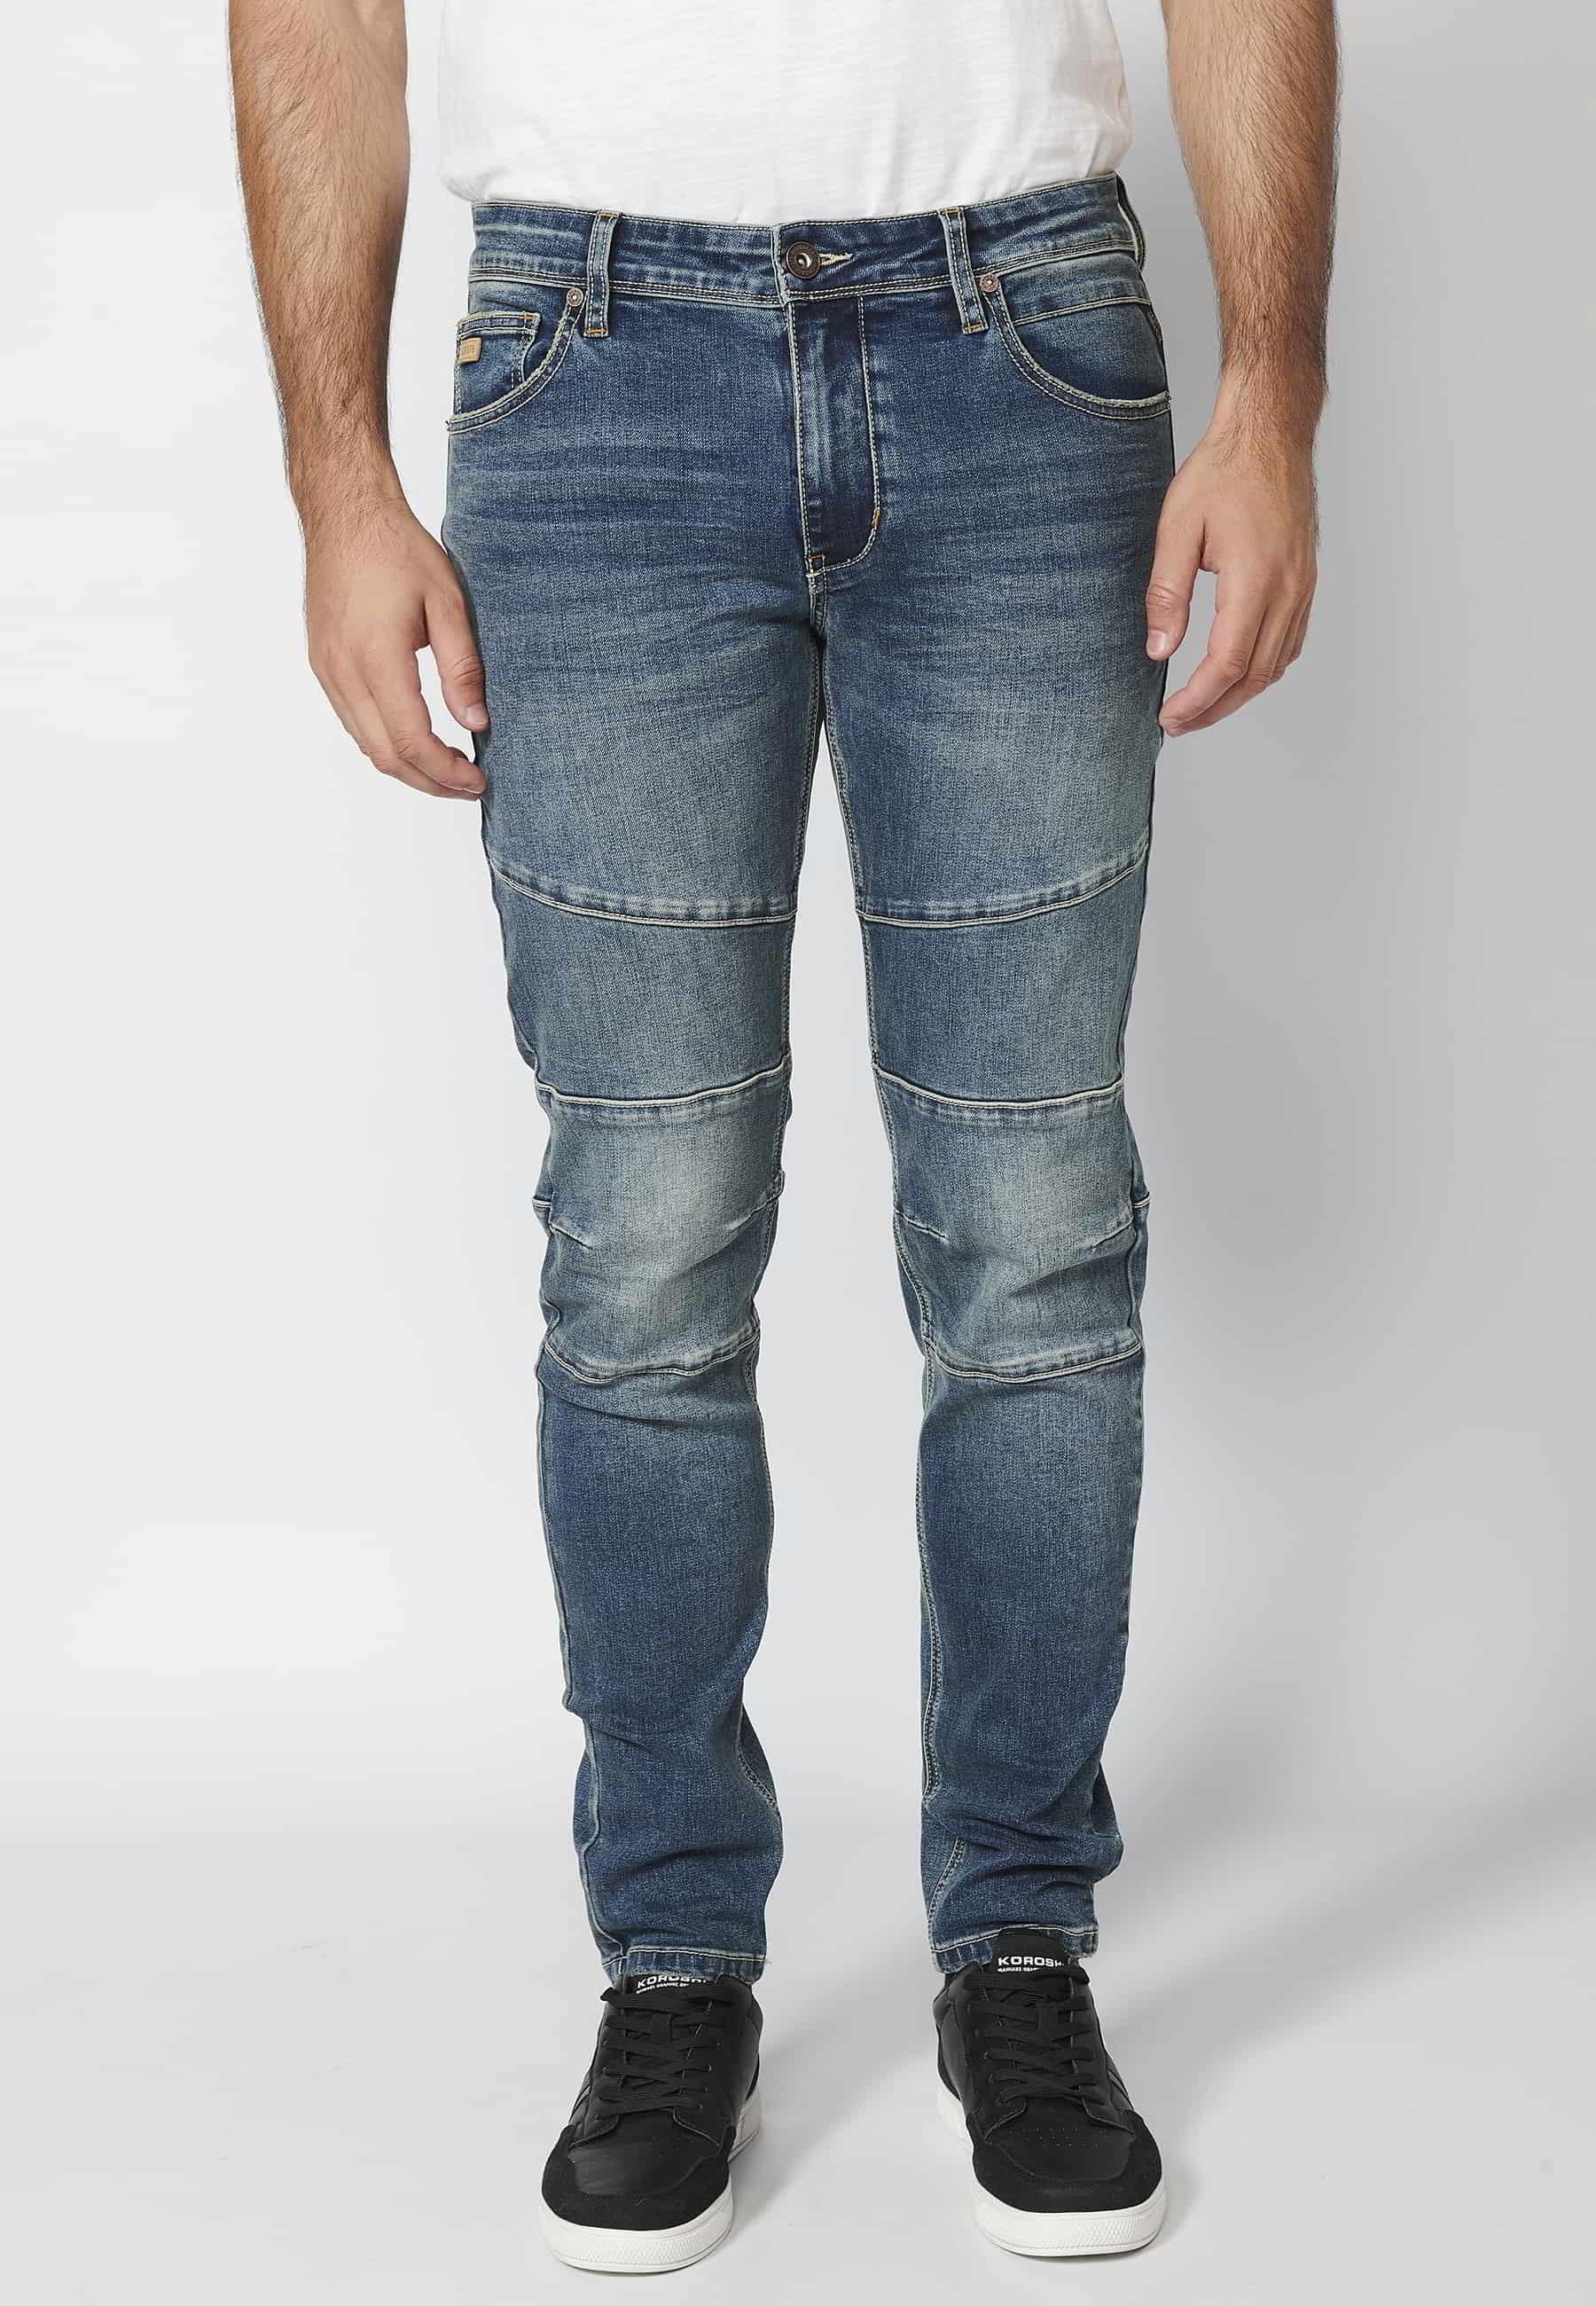 Pantalón largo jeans biker skinny fit con detalles en rodillas cinco bolsillos color Azul para Hombre 3